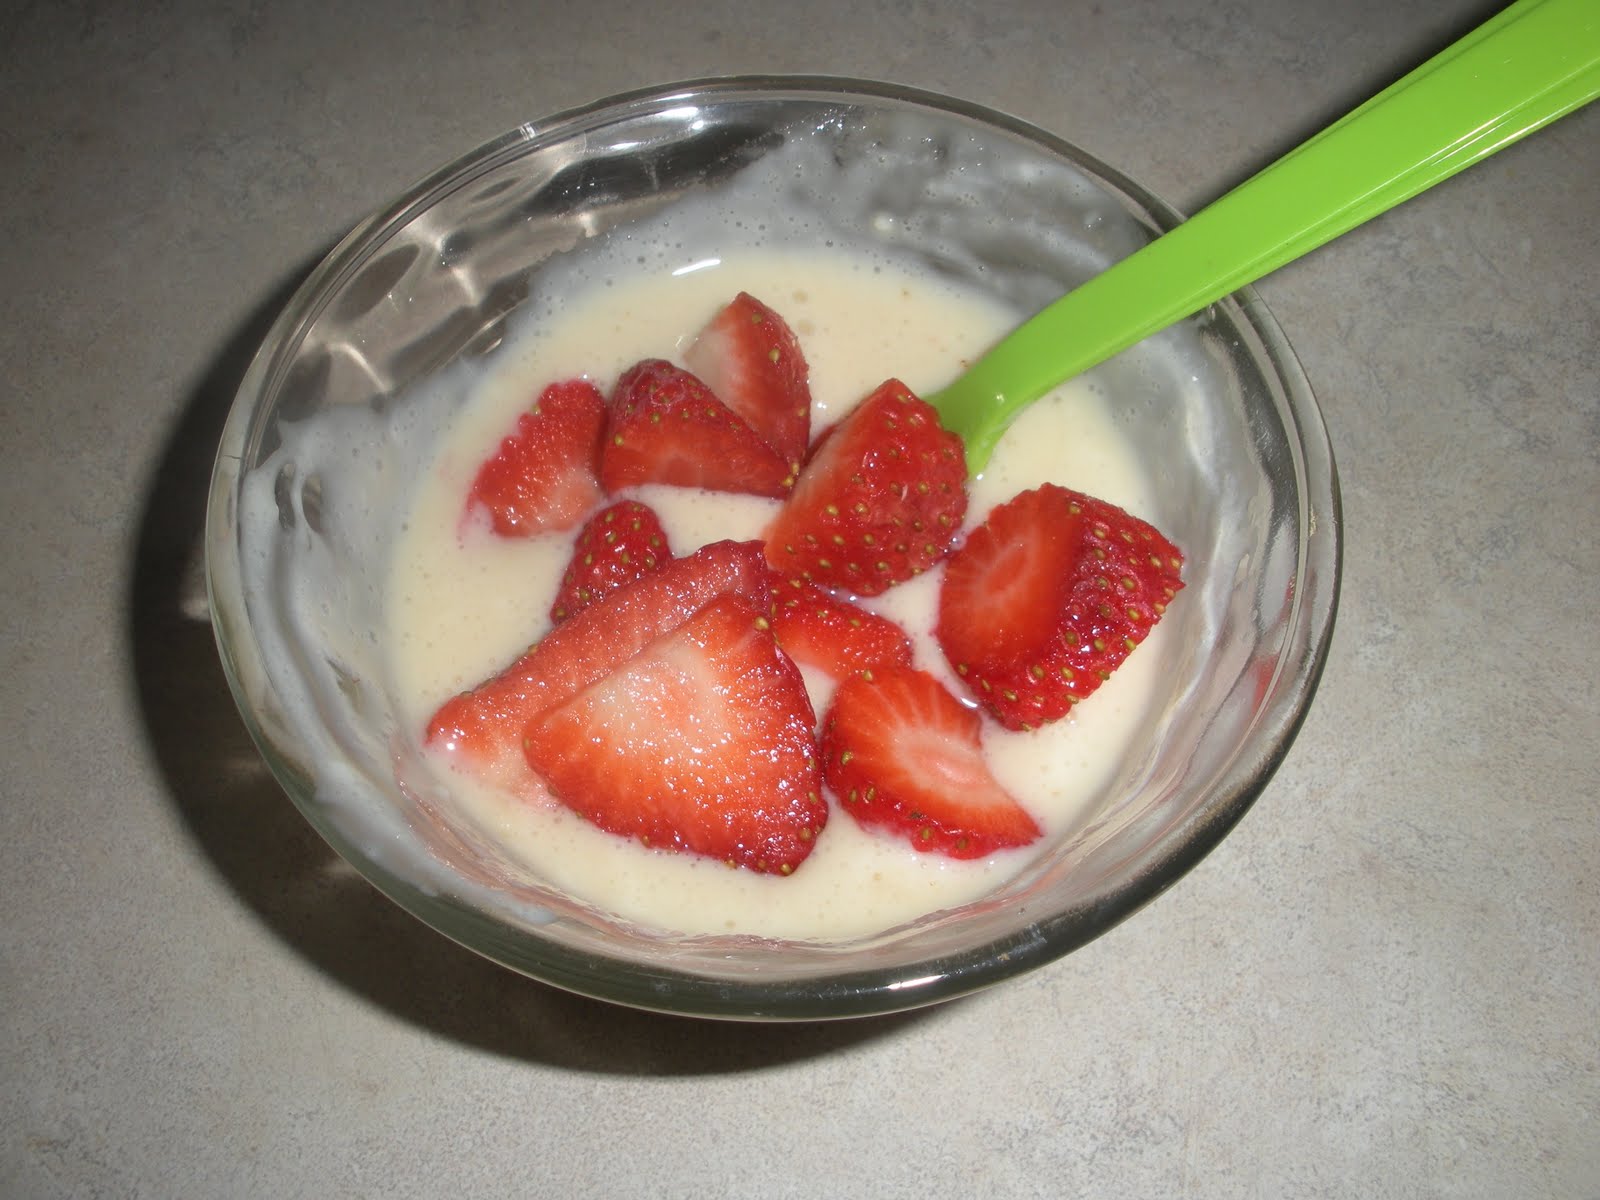 Что можно сделать из йогурта. Домашний йогурт проект. Как сделать домашний йогурт с фруктами. Как делать фруктовые йогурты дома. Как сделать кислый йогурт вкусным.